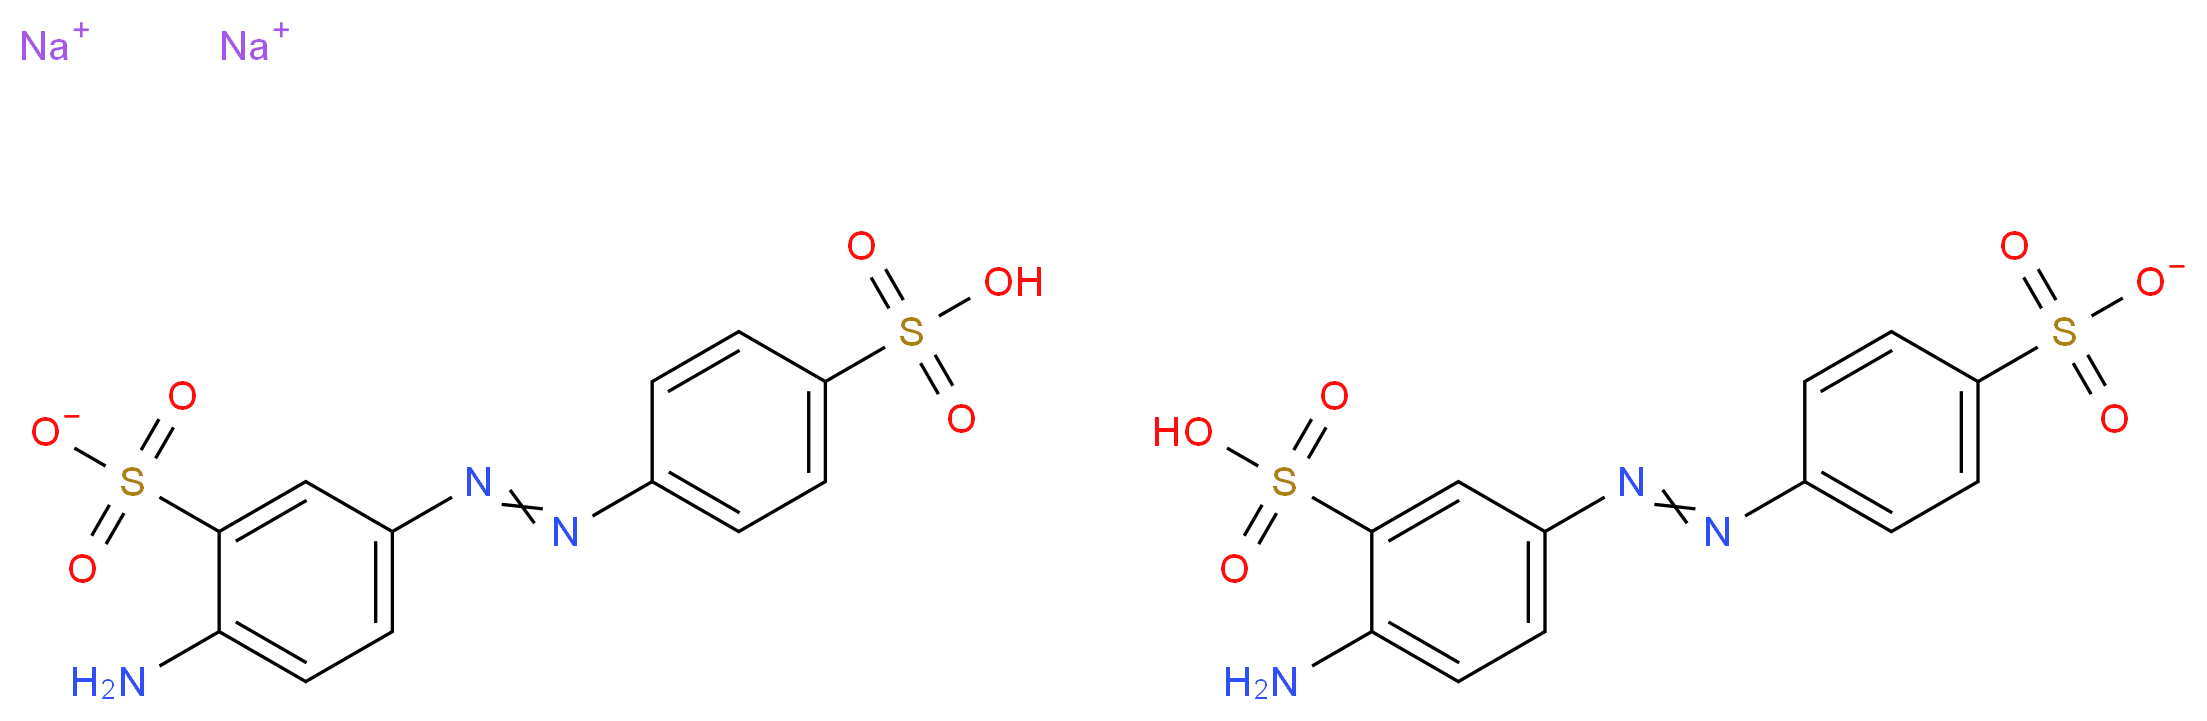 74543-21-8 molecular structure